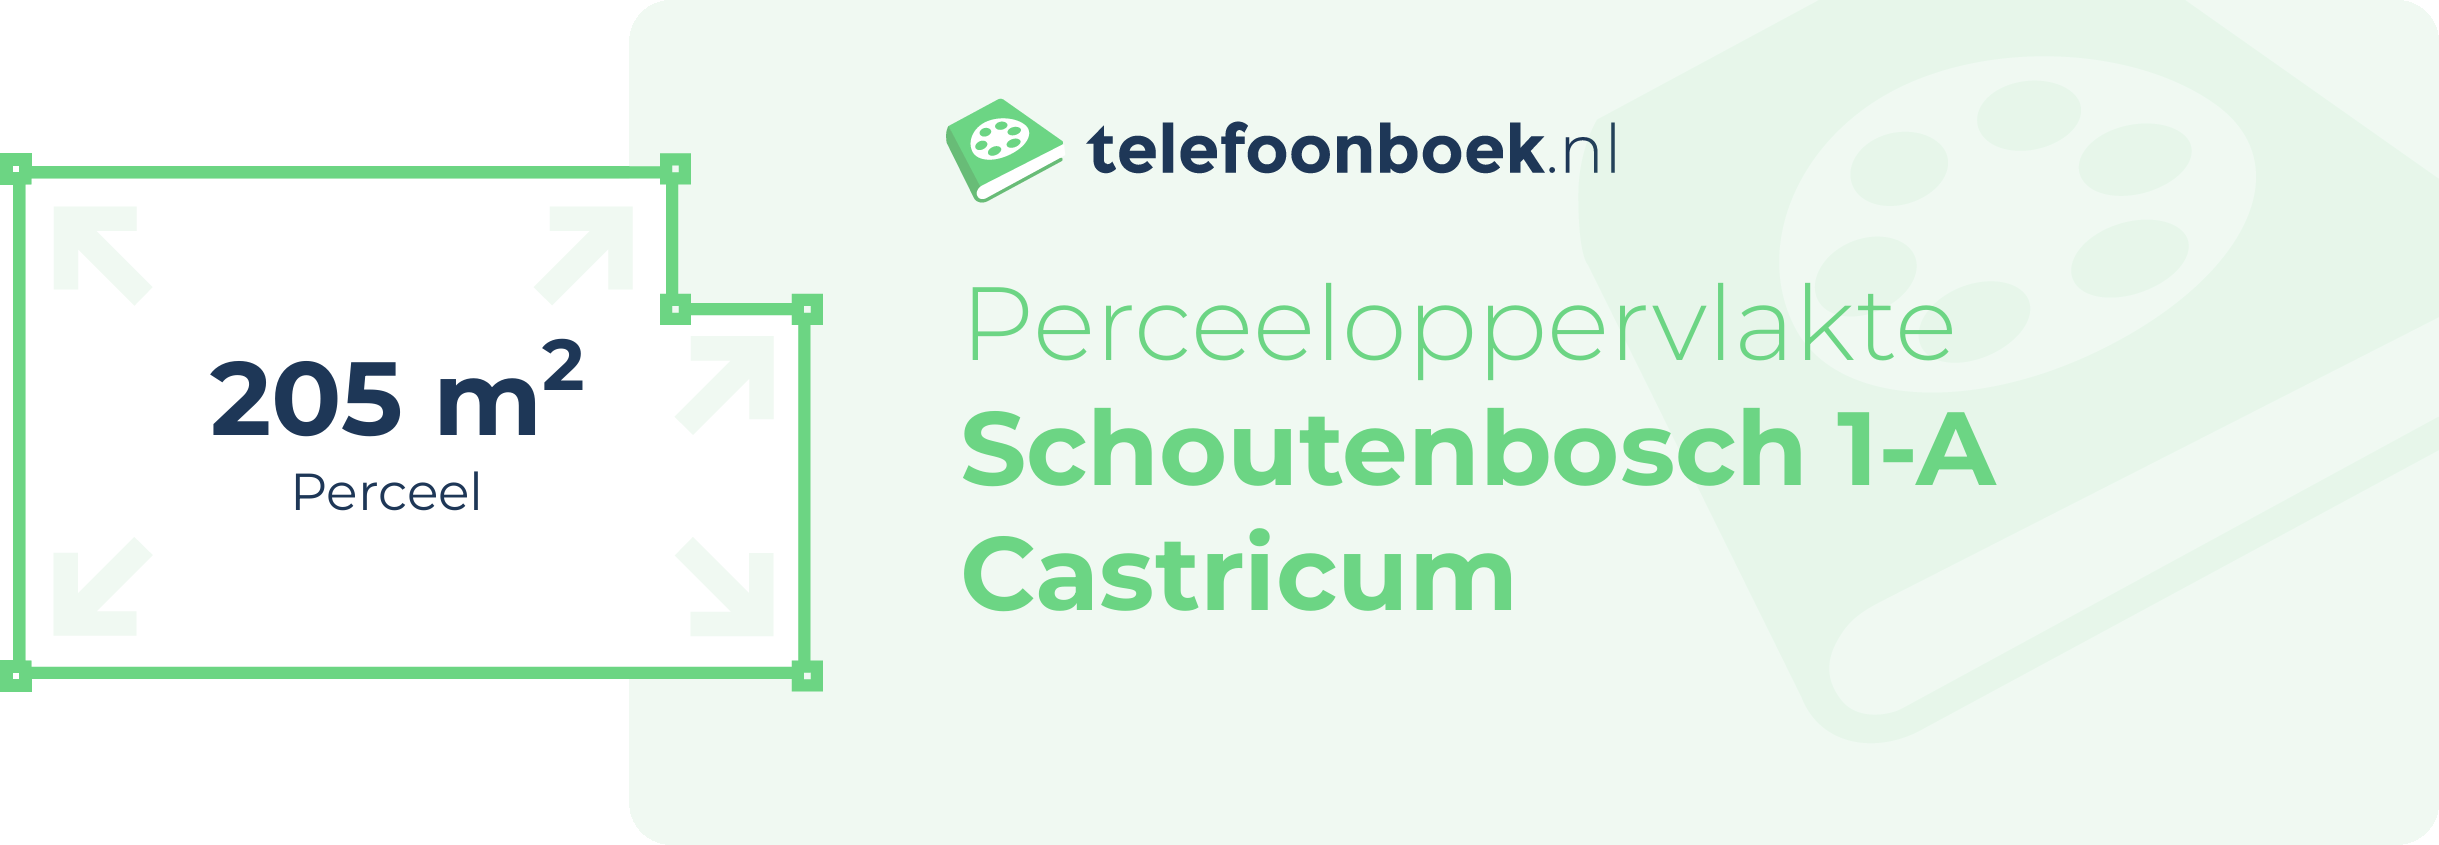 Perceeloppervlakte Schoutenbosch 1-A Castricum